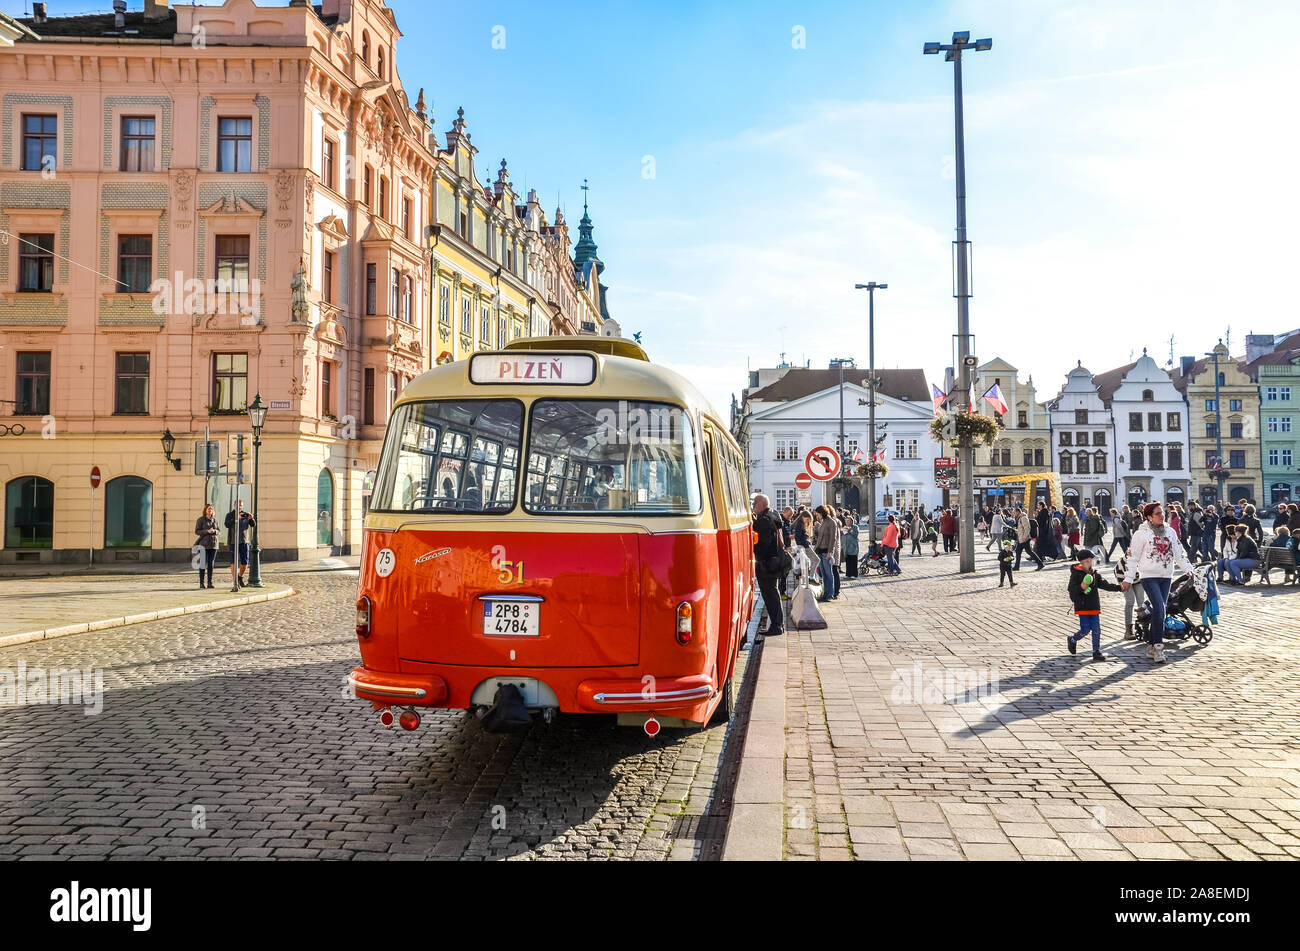 Plzen, Tschechien - Okt 28, 2019: Vintage red Bus auf dem Hauptplatz in Pilsen, Böhmen, Tschechien. Teil der nationalen Feiertag feier Programm. Stadt Altstadt. Jahrgang Bus, Transport. Stockfoto